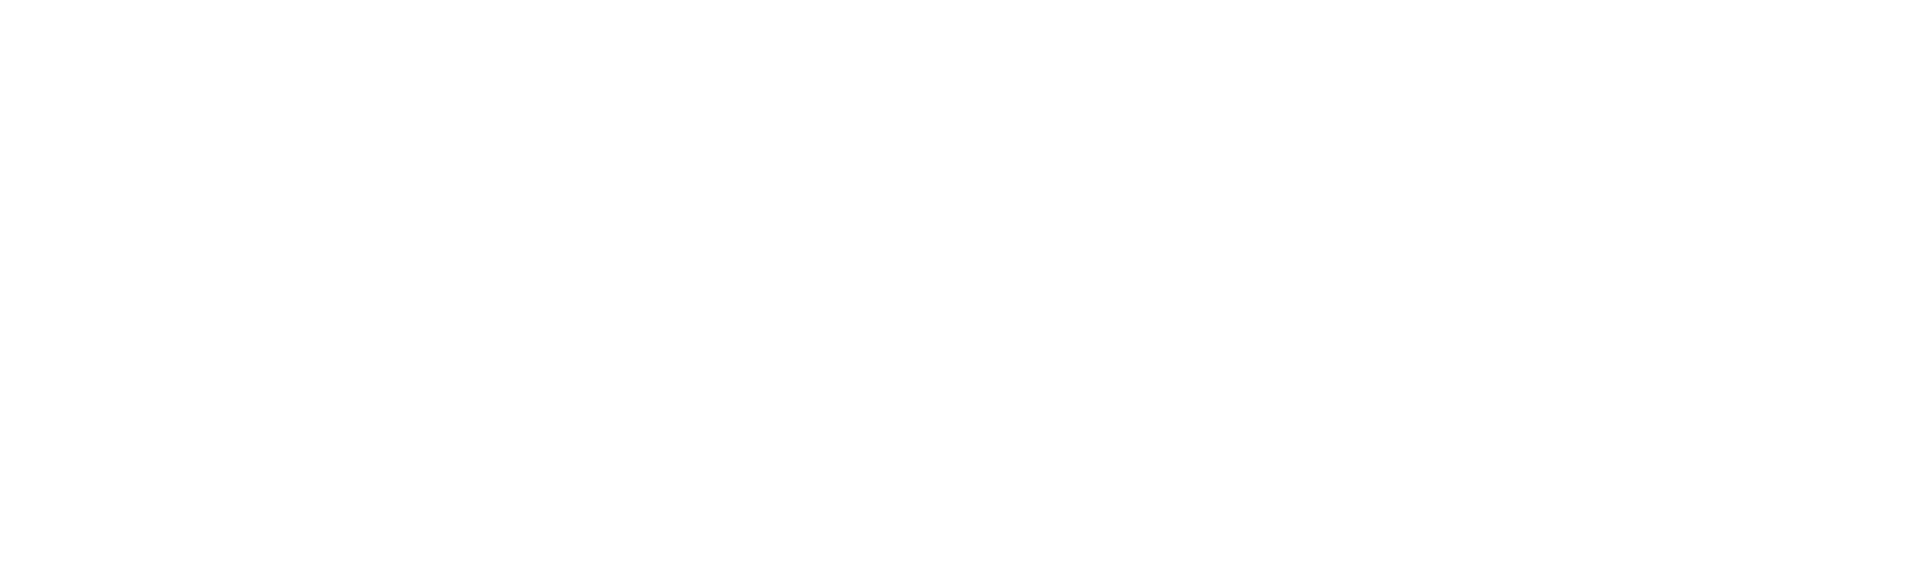 Prestonwood Foundation logo